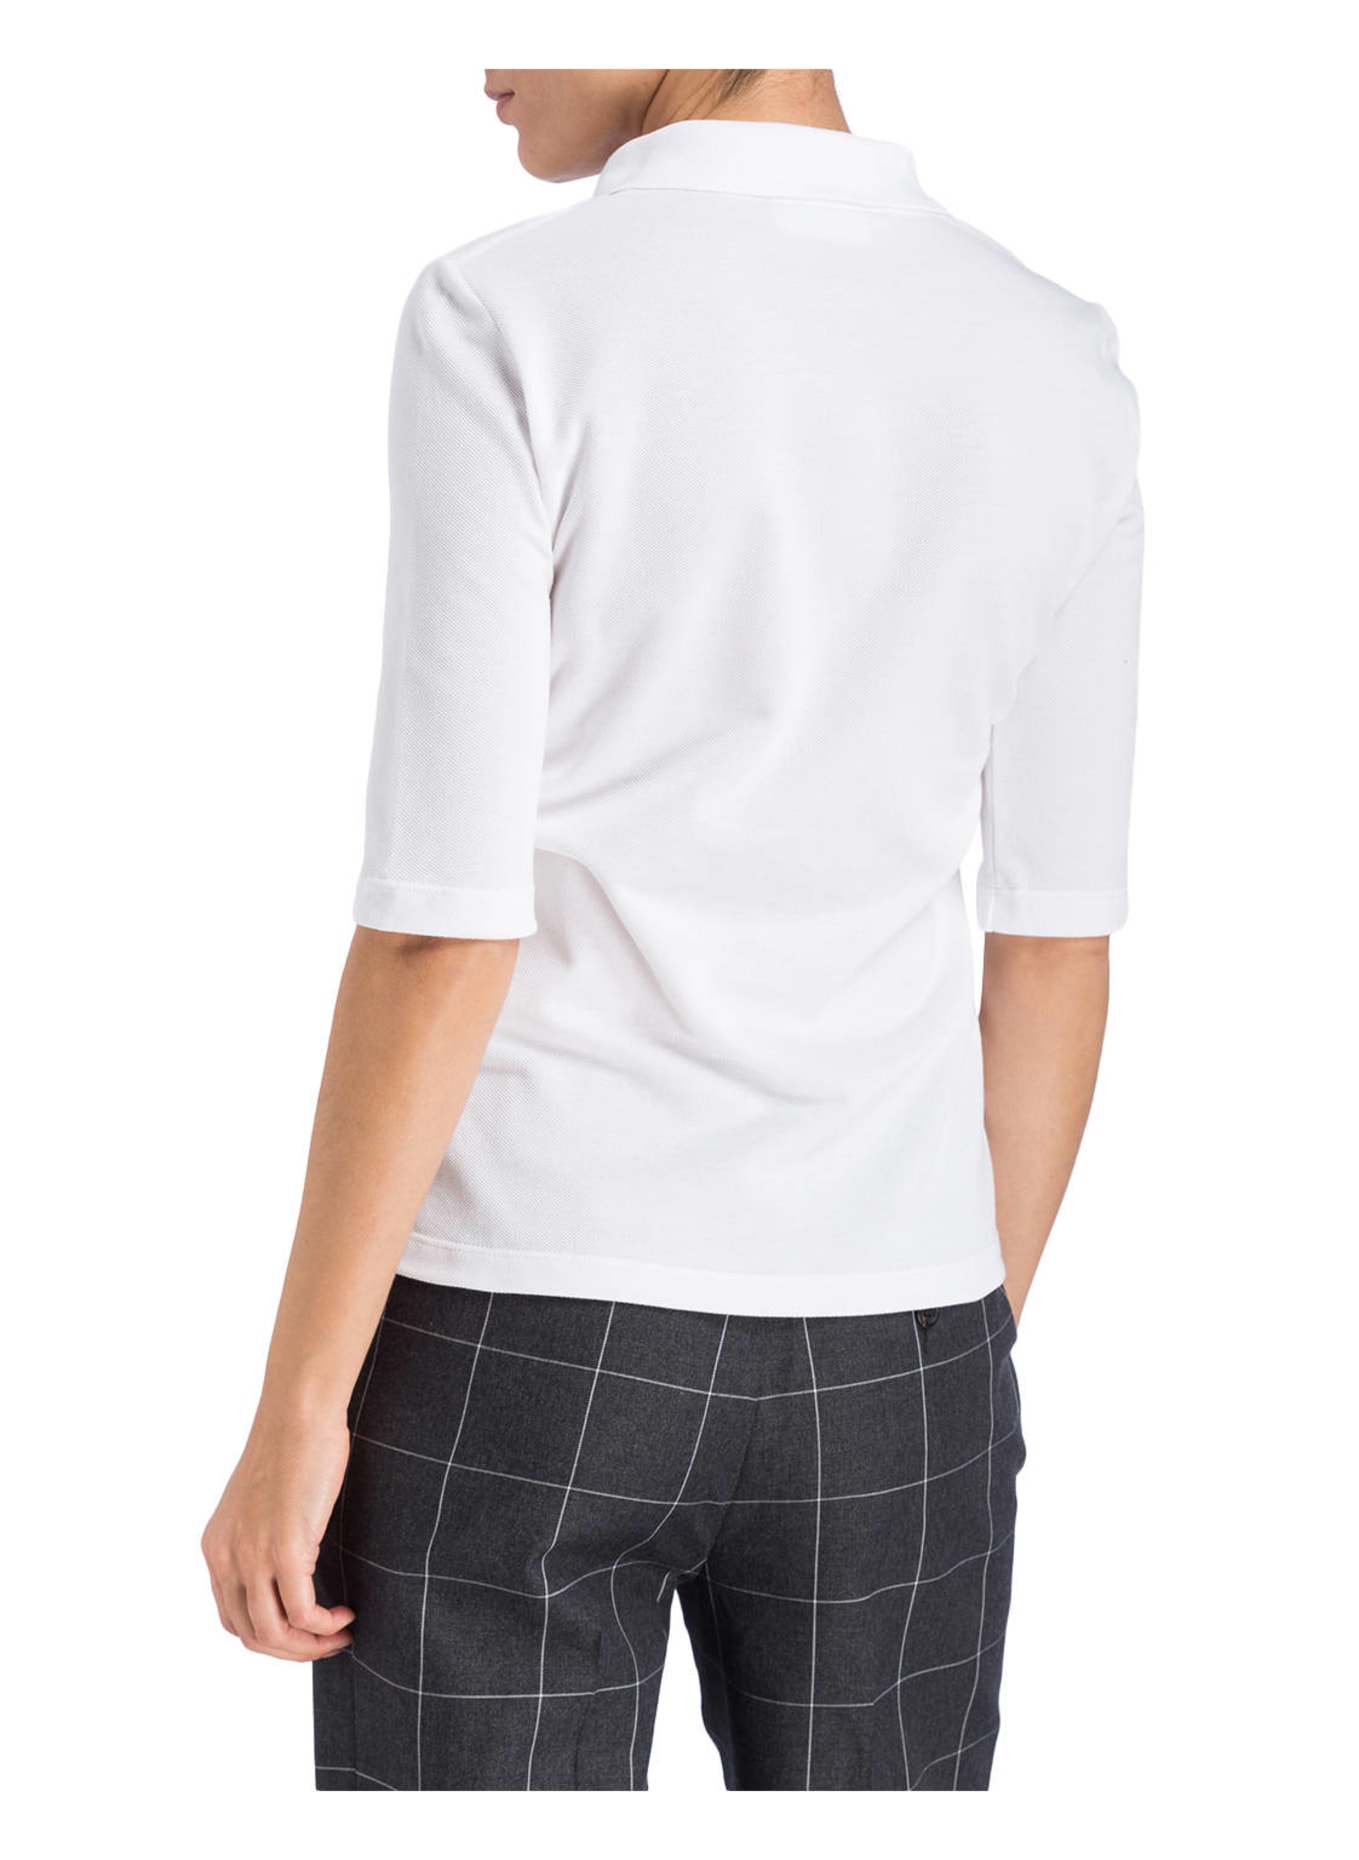 LACOSTE Piqué-Poloshirt mit 3/4-Arm, Farbe: WEISS (Bild 3)